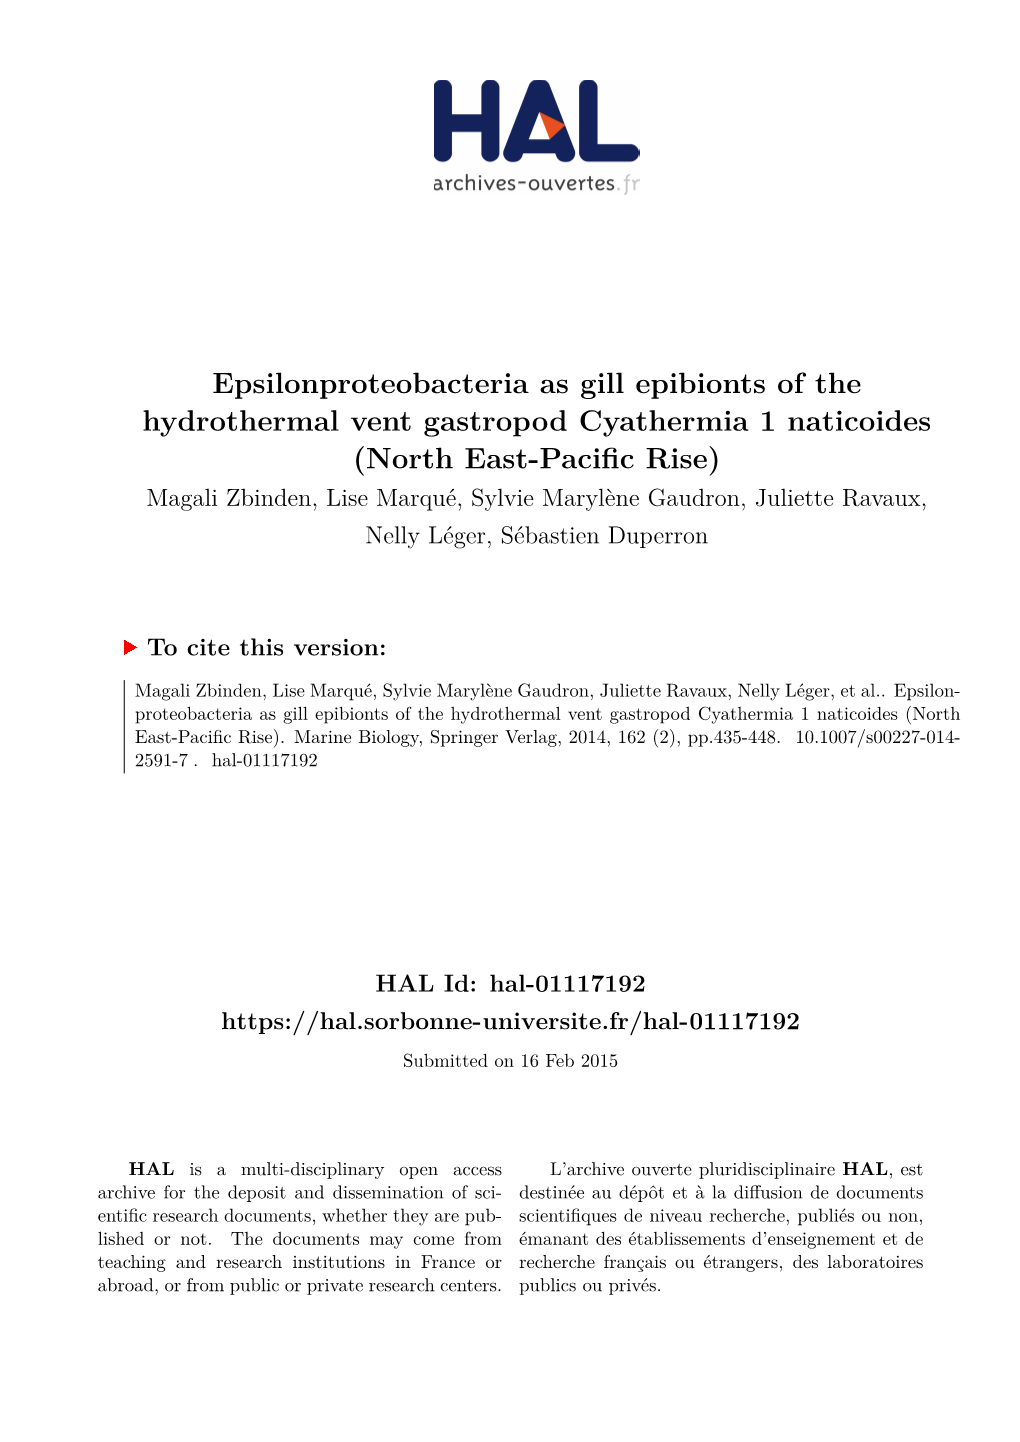 Epsilonproteobacteria As Gill Epibionts of The